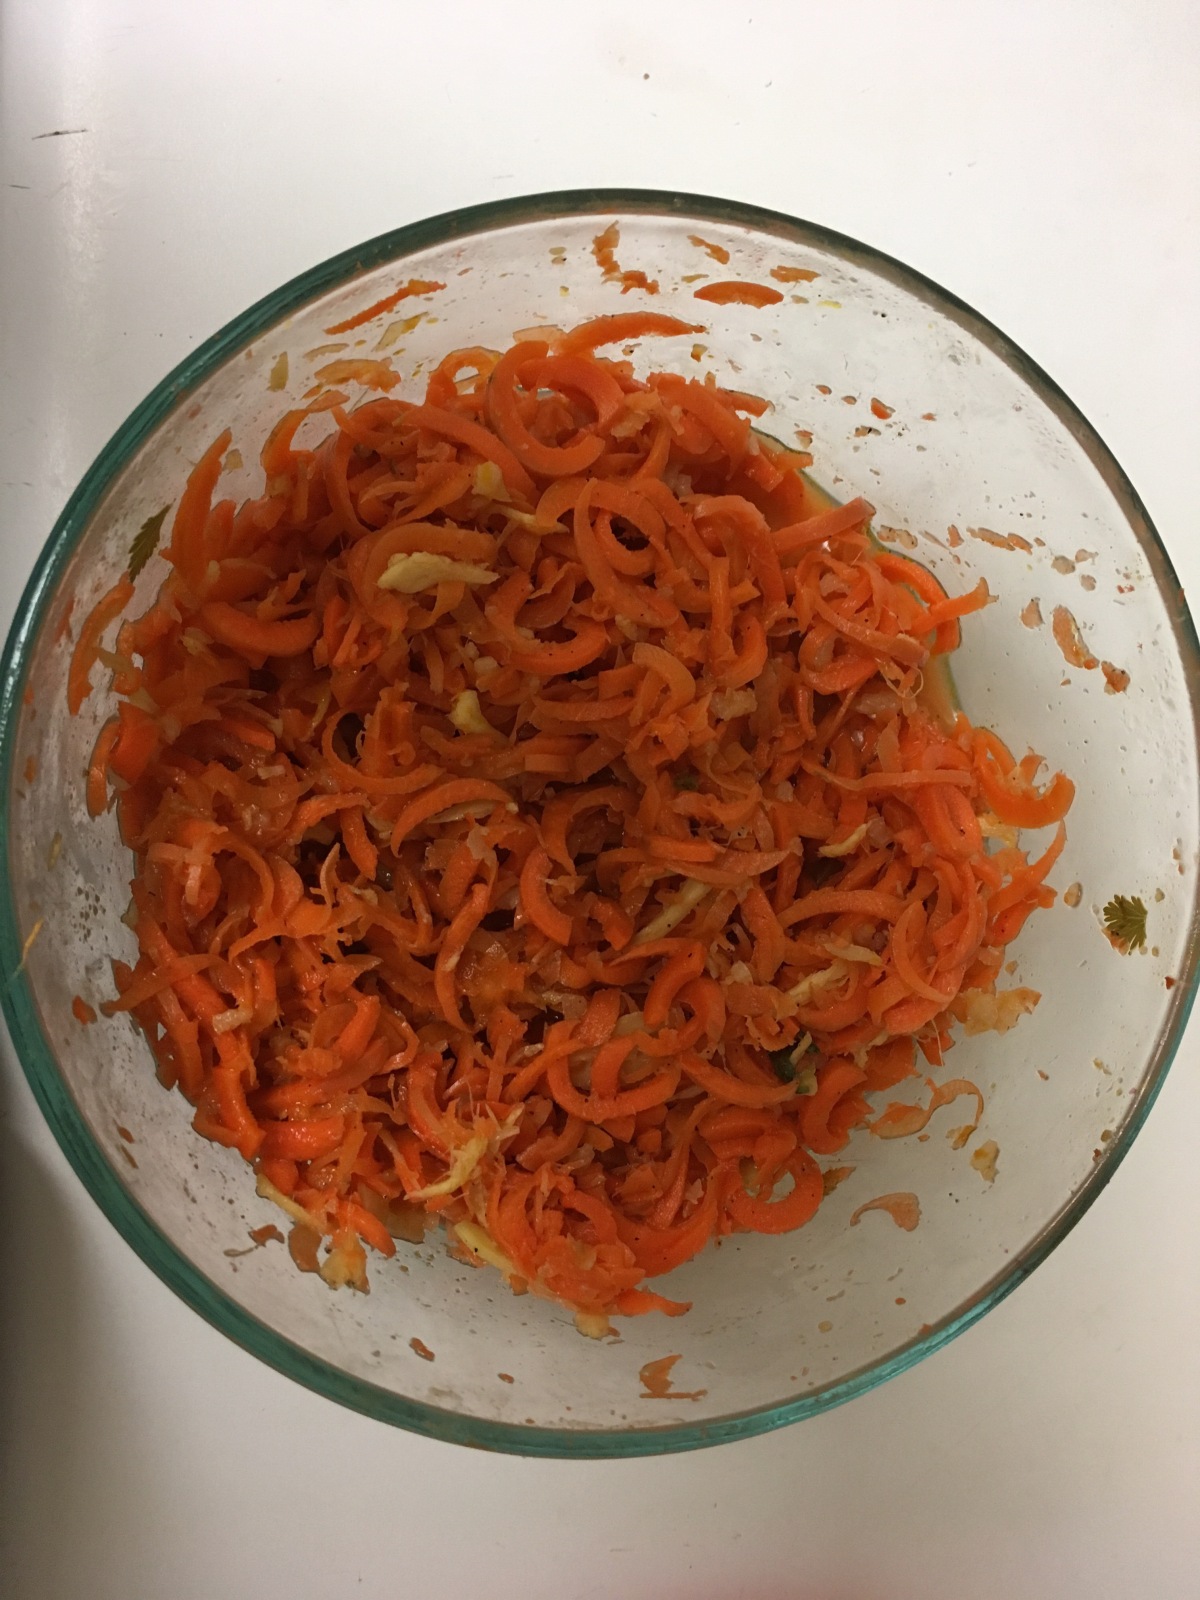 Carrot kimchi, a Korean banchan recipe